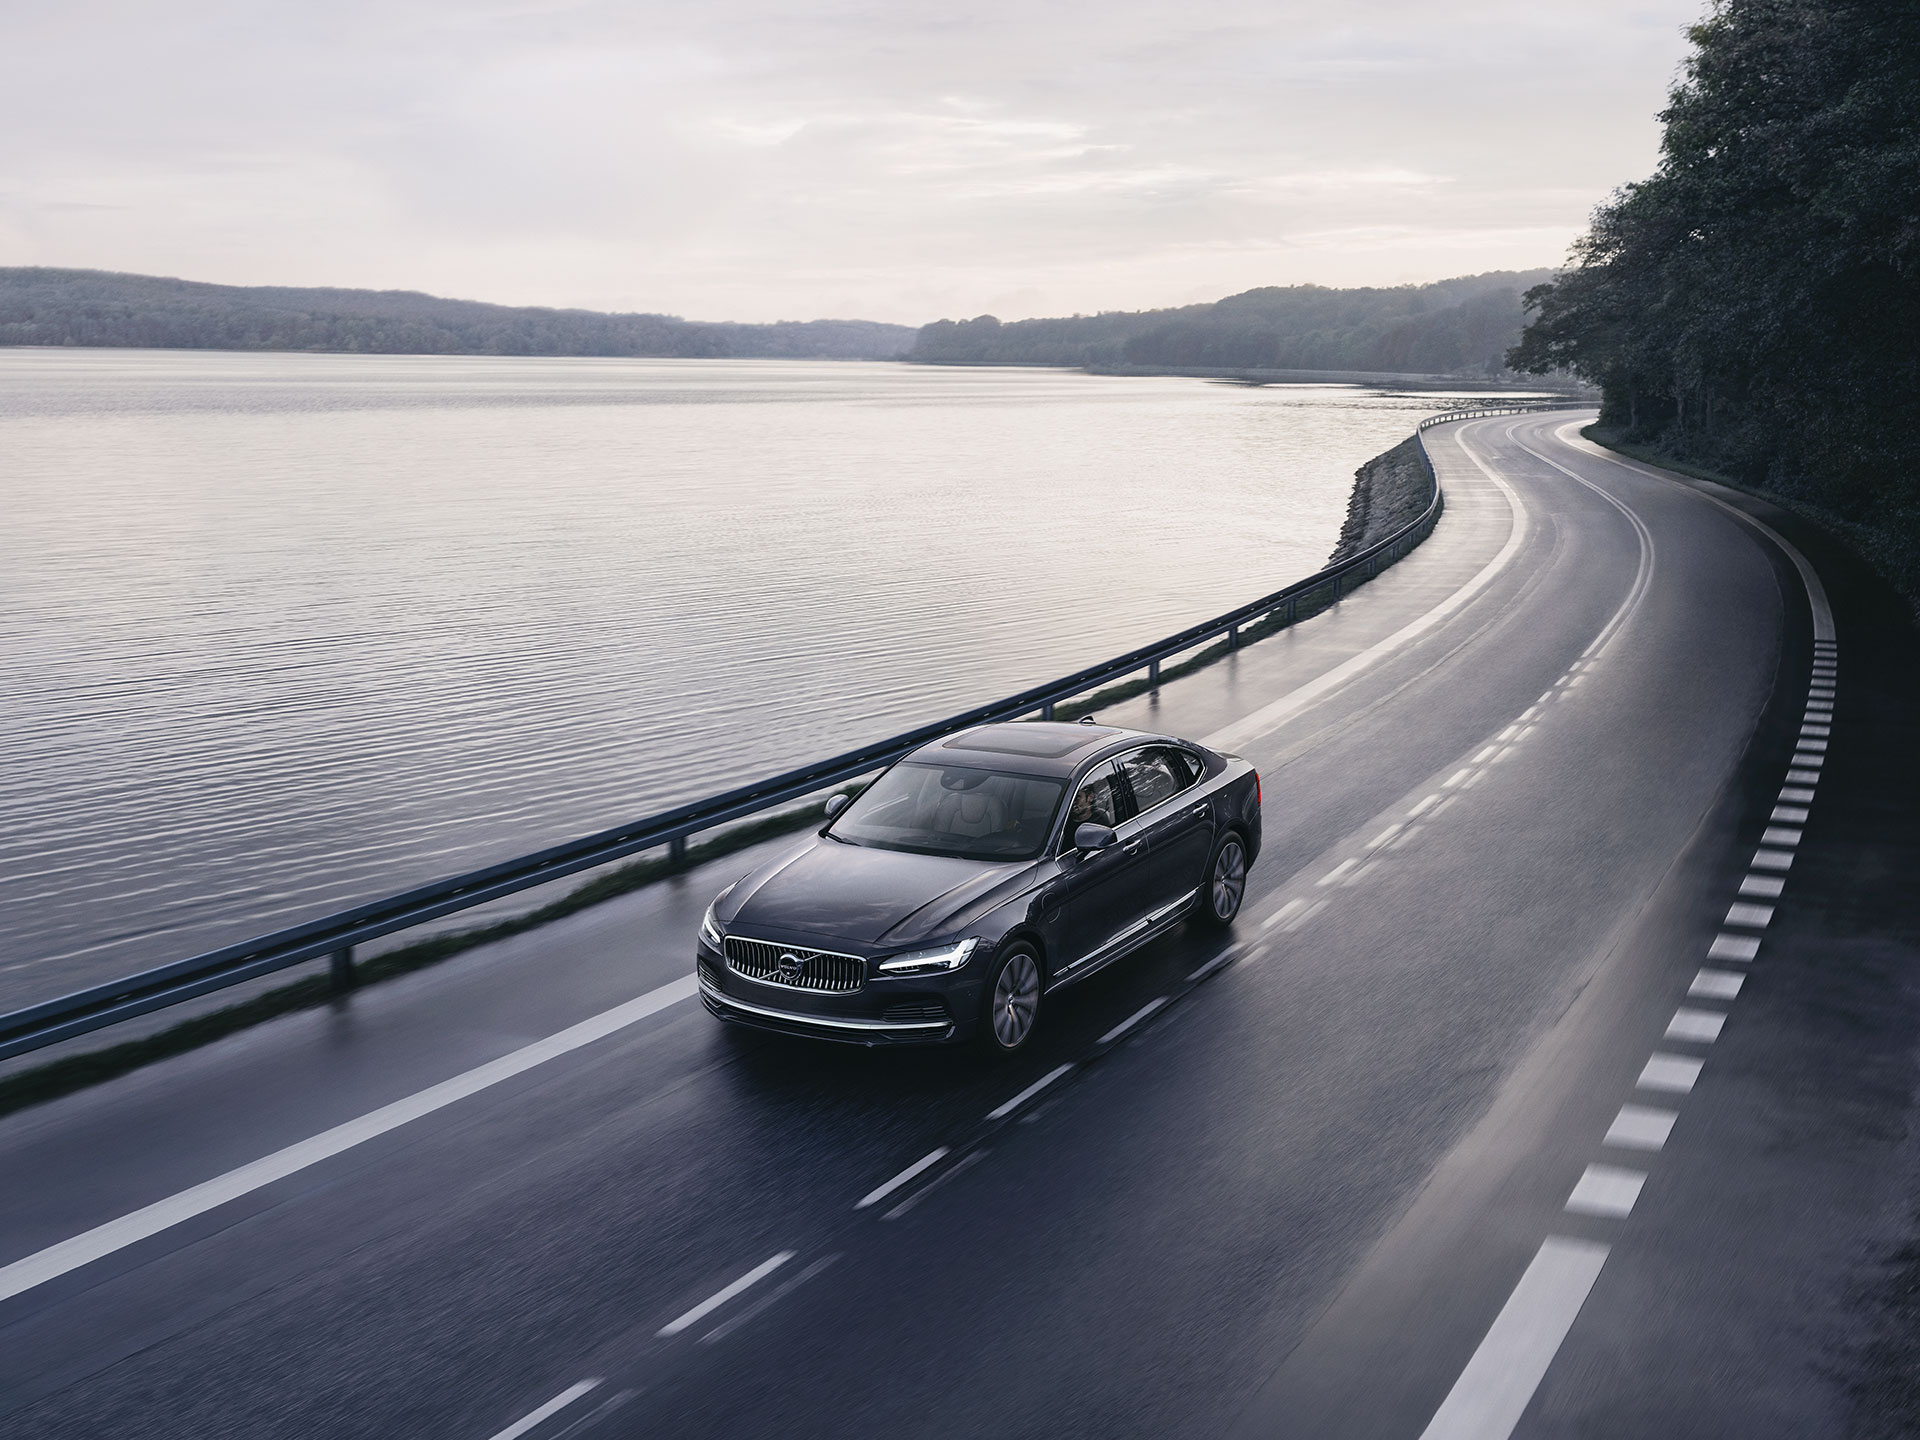 Мягкий гибрид Volvo S90 едет по прибрежной дороге.